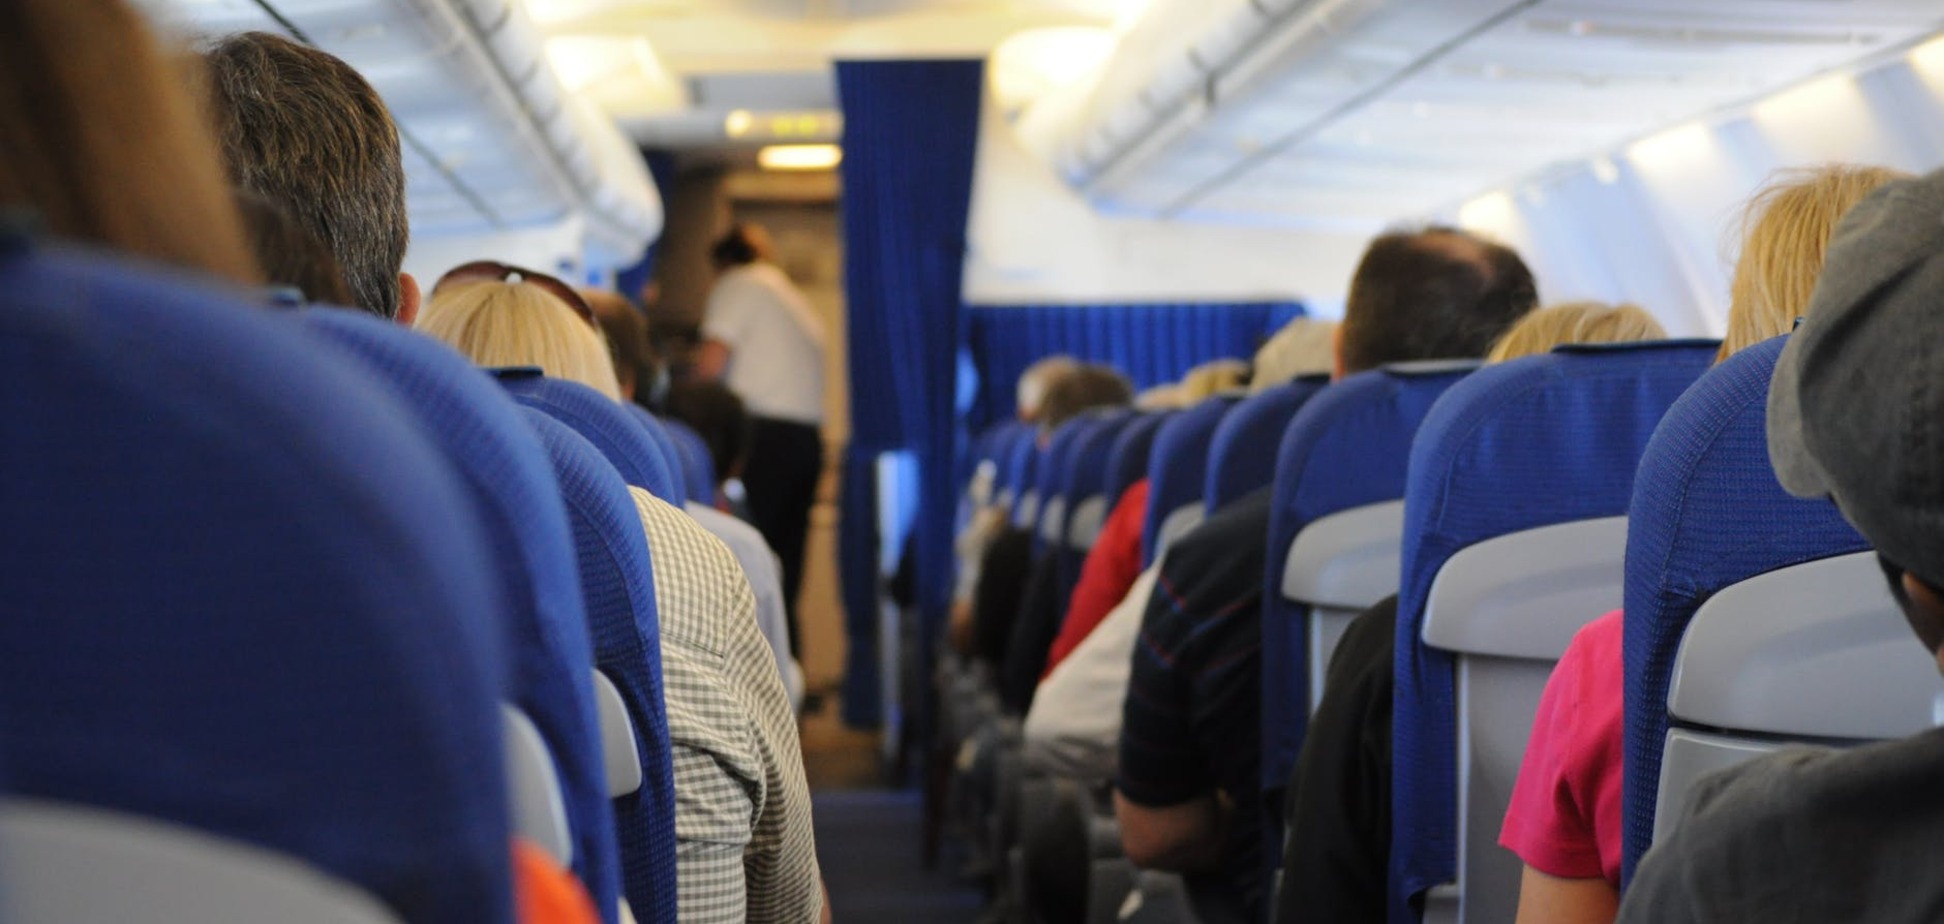 Хто дратує в літаку: складено рейтинг 'пекельних' пасажирів